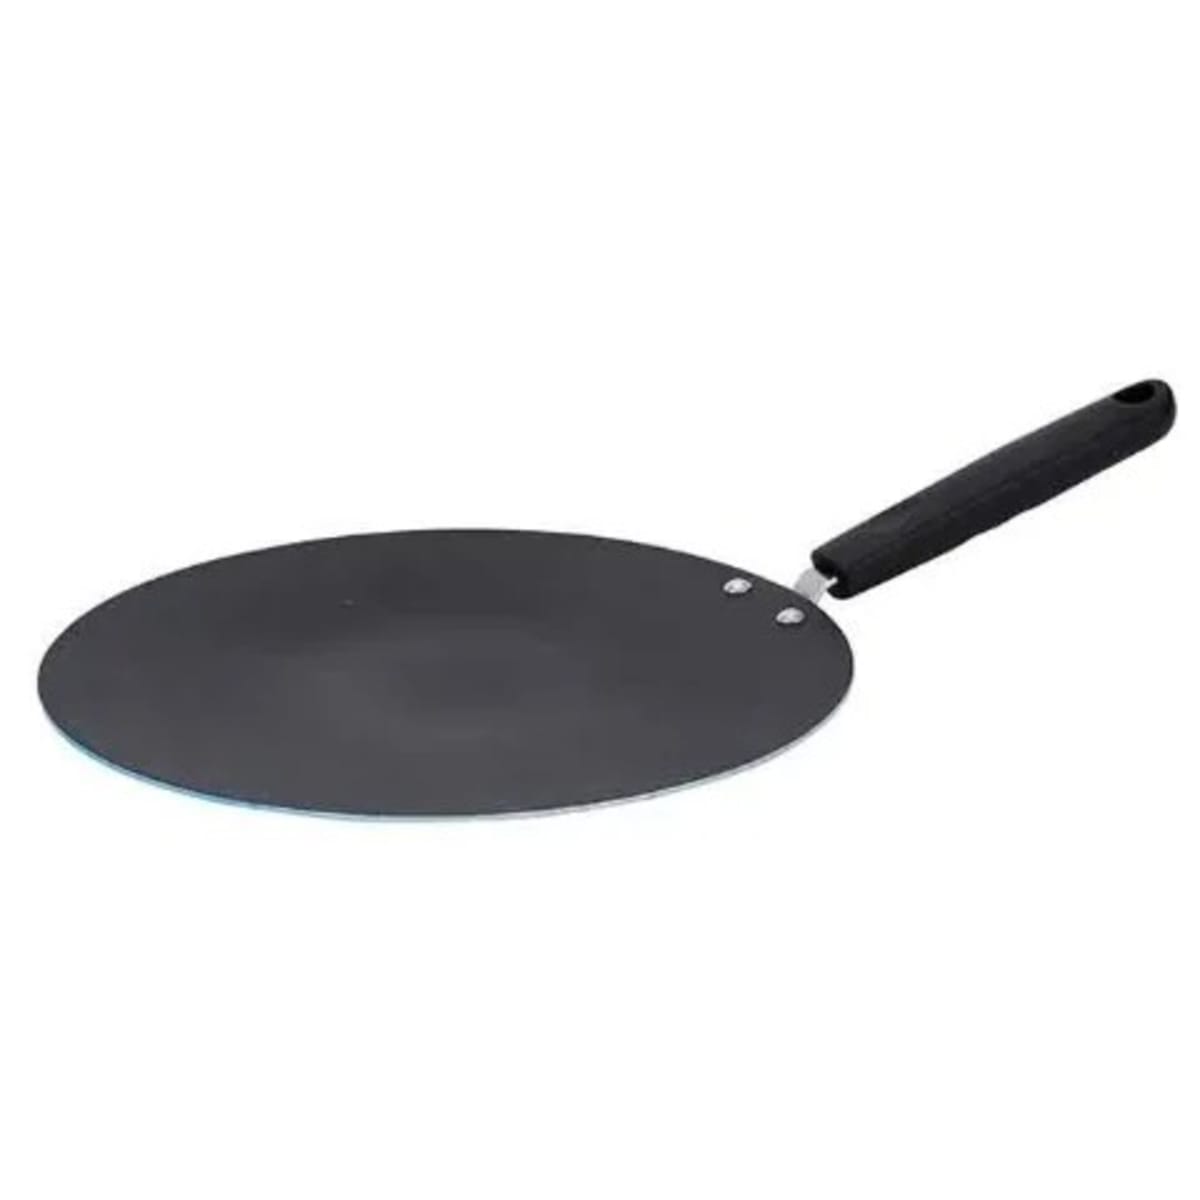 Dosa pan,NON - STICK DOSA PAN,Non-Stick Flat Dosa Tawa Set (Black